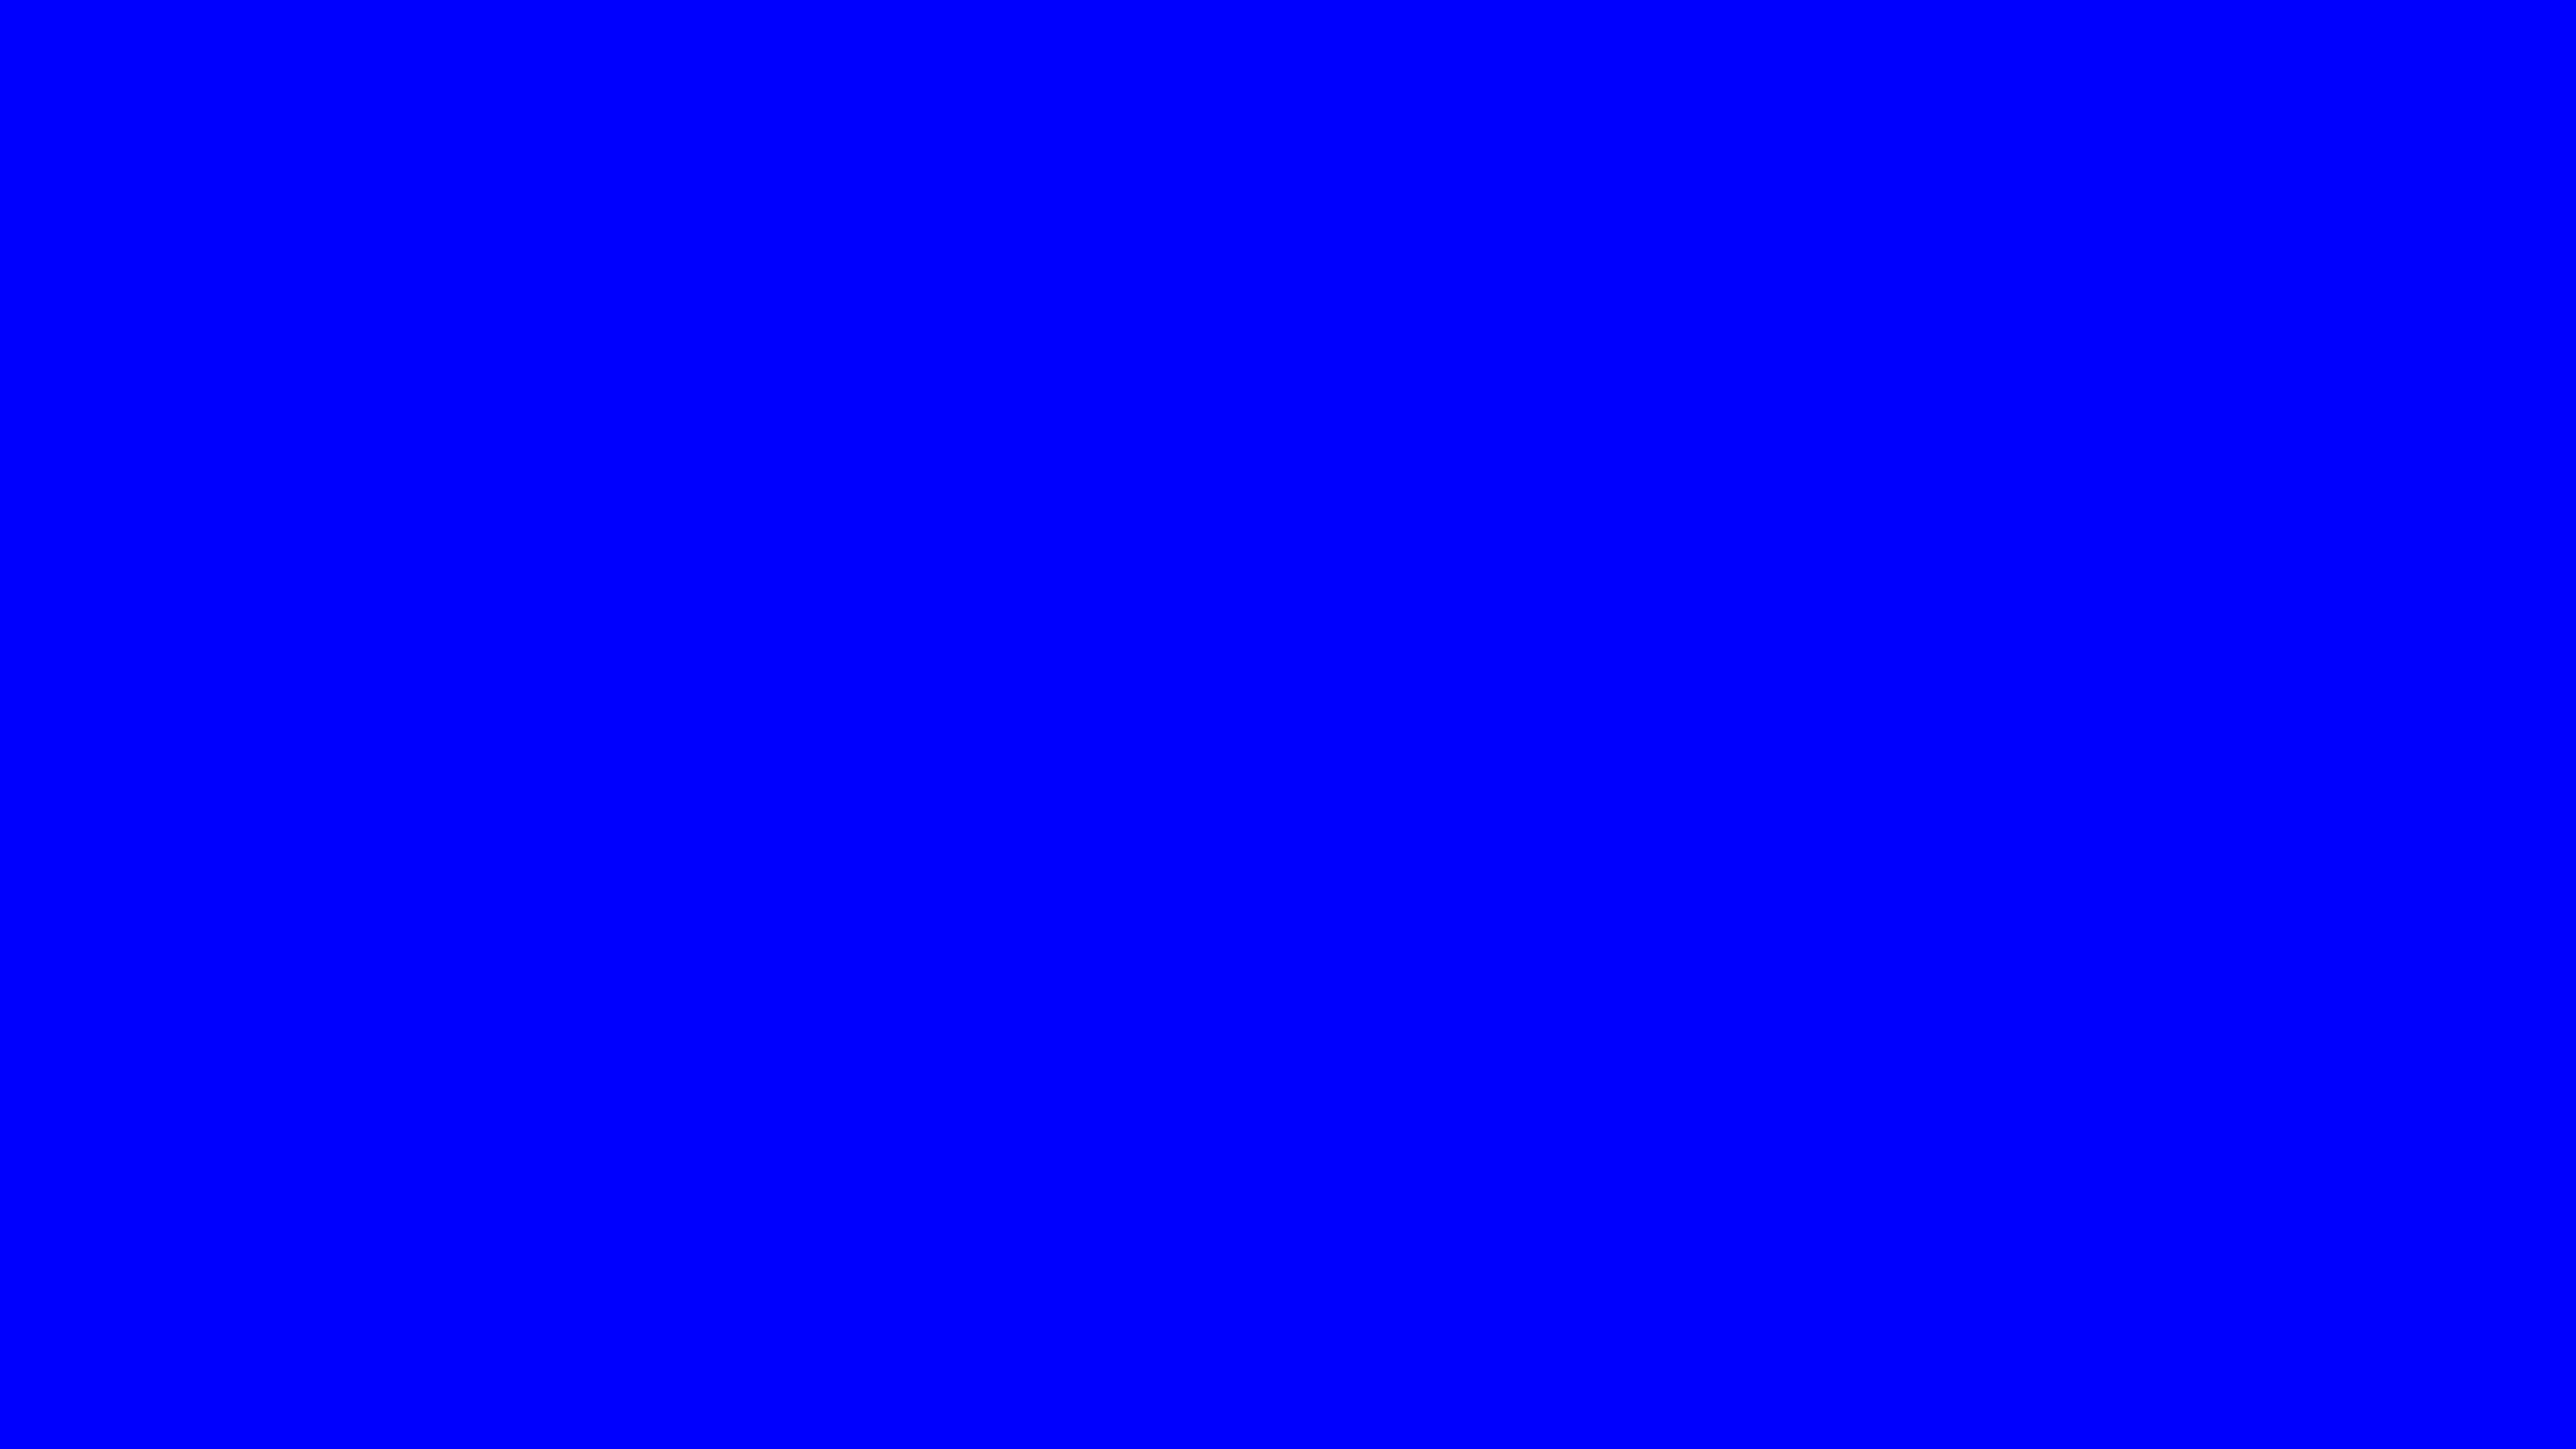 Solid Blue Wallpapers - Top Những Hình Ảnh Đẹp